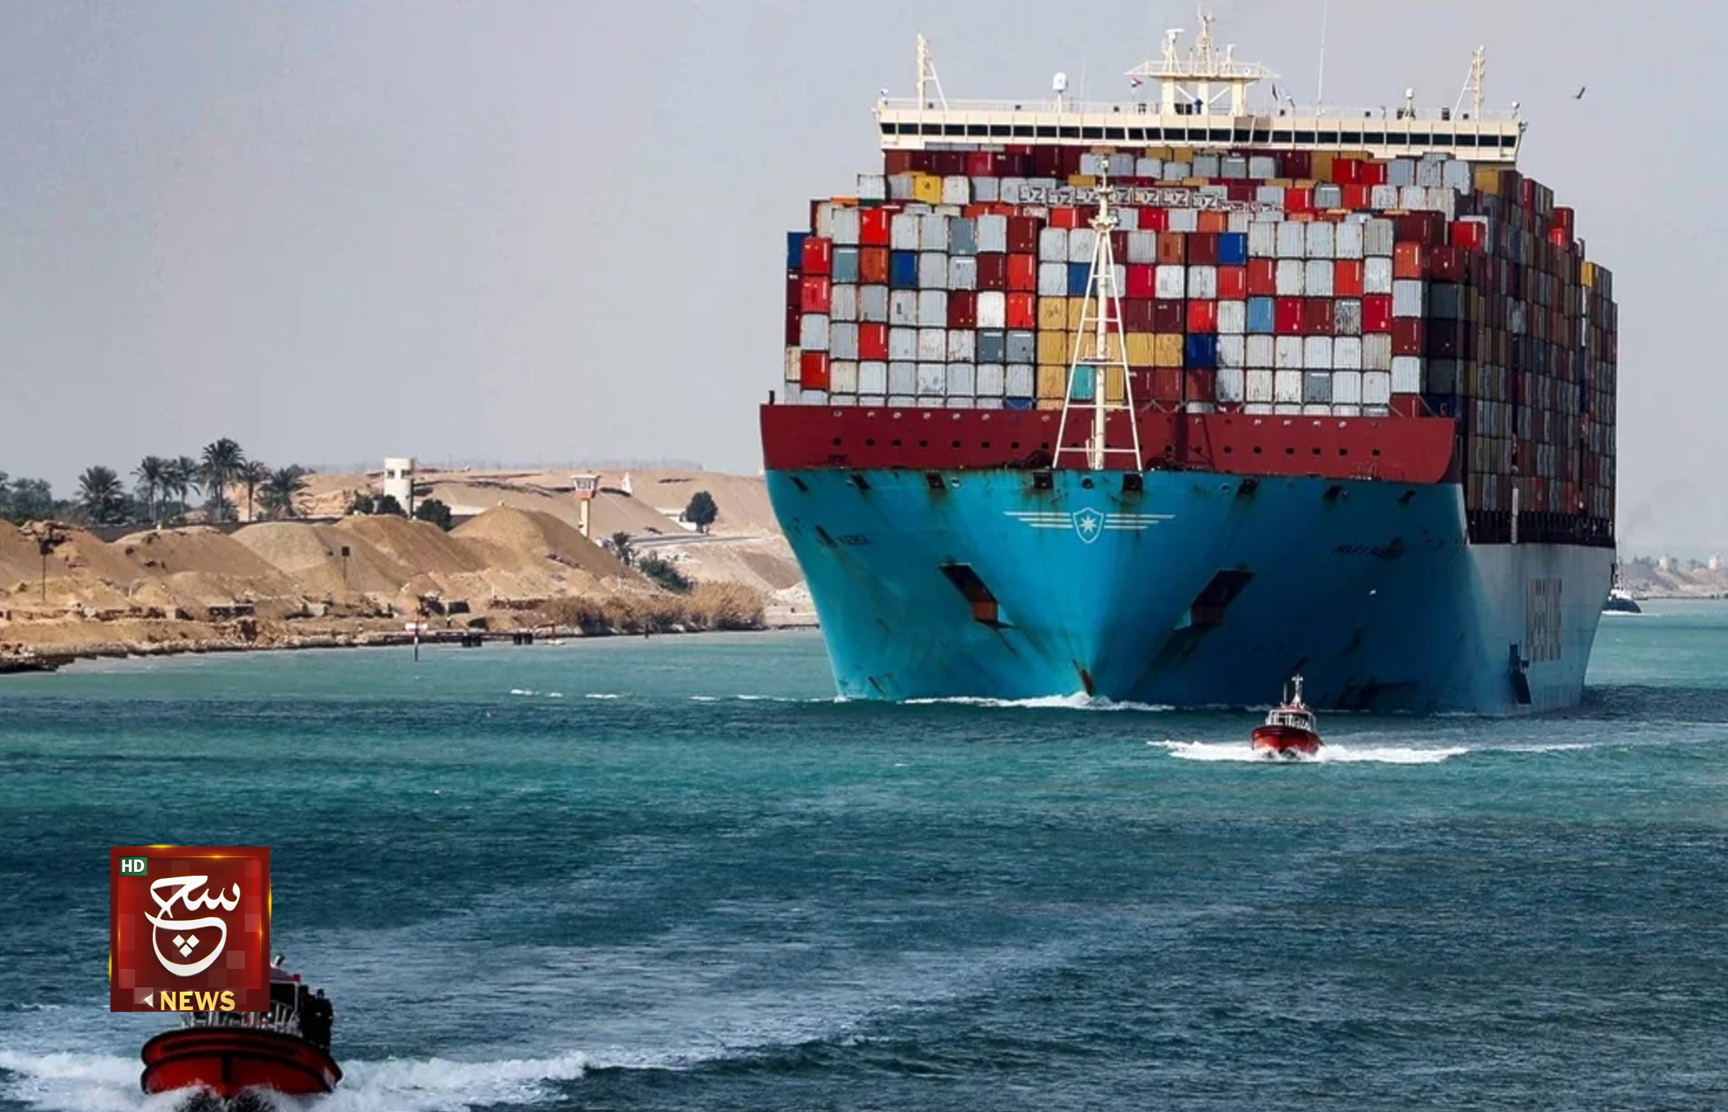 "بلومبيرغ": نصف أسطول سفن الحاويات يتجنب البحر الأحمر بعد العمليات اليمنية